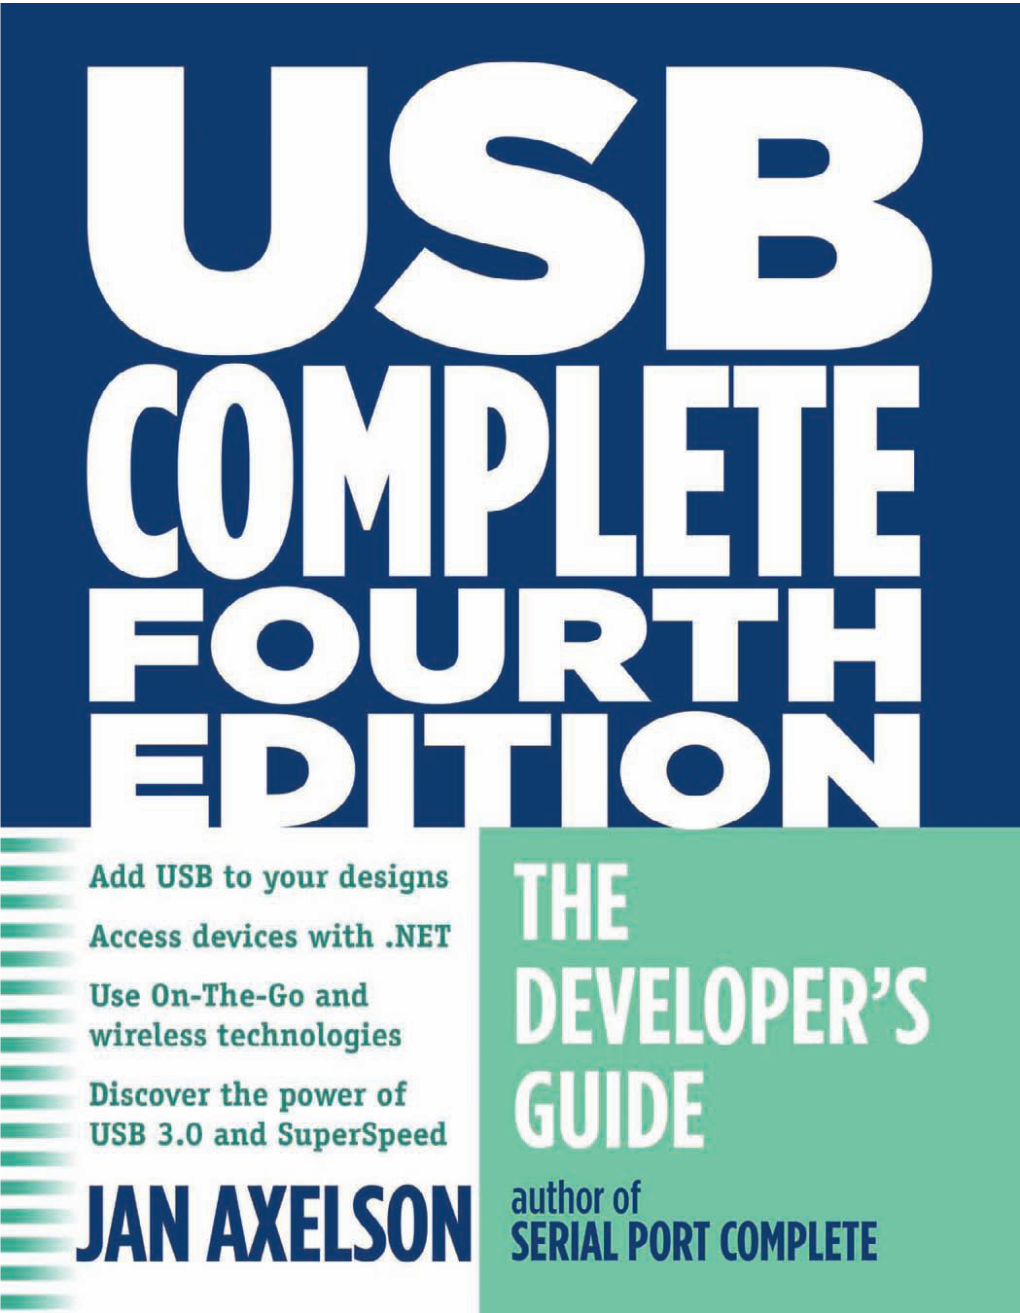 USB Complete the Developer's Guide 4Th Ed.Pdf